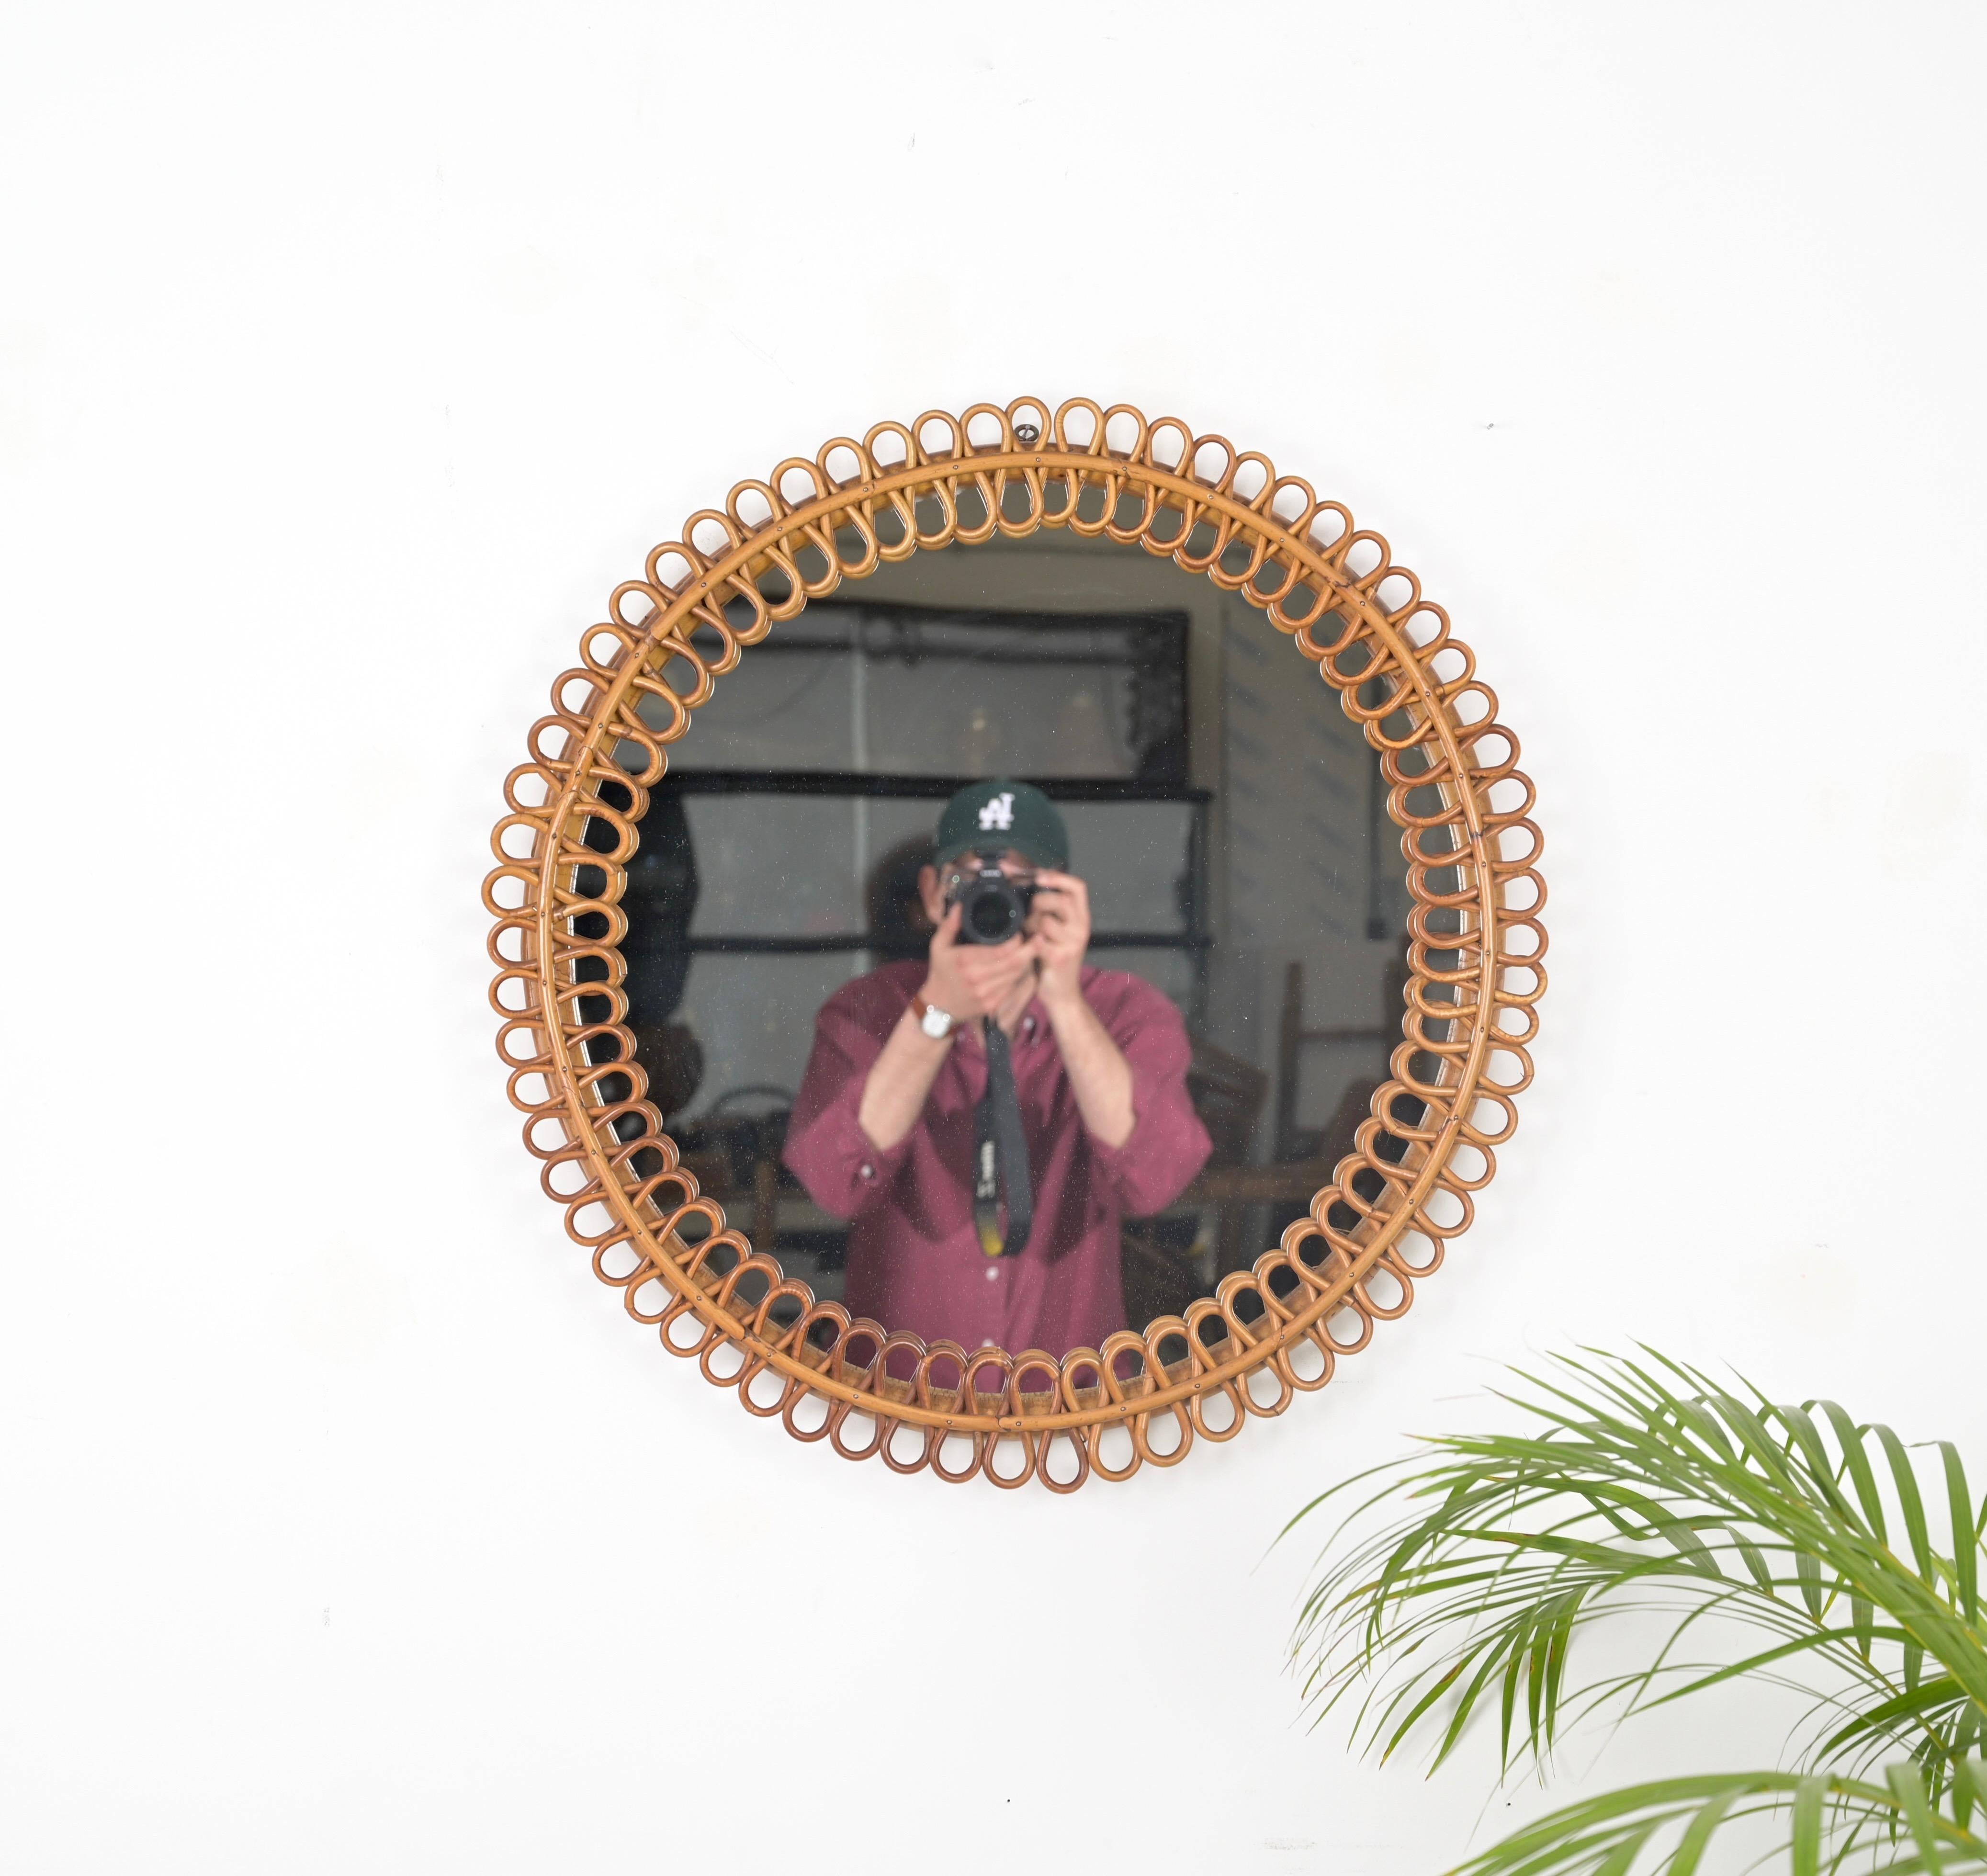 Remarquable miroir rond de style Côte d'Azur, entièrement réalisé en rotin et bambou courbé. Ce miroir spectaculaire et unique a été conçu par la maîtrise de Franco Albini et produit en Italie dans les années 1960. 

En parfait état et d'une